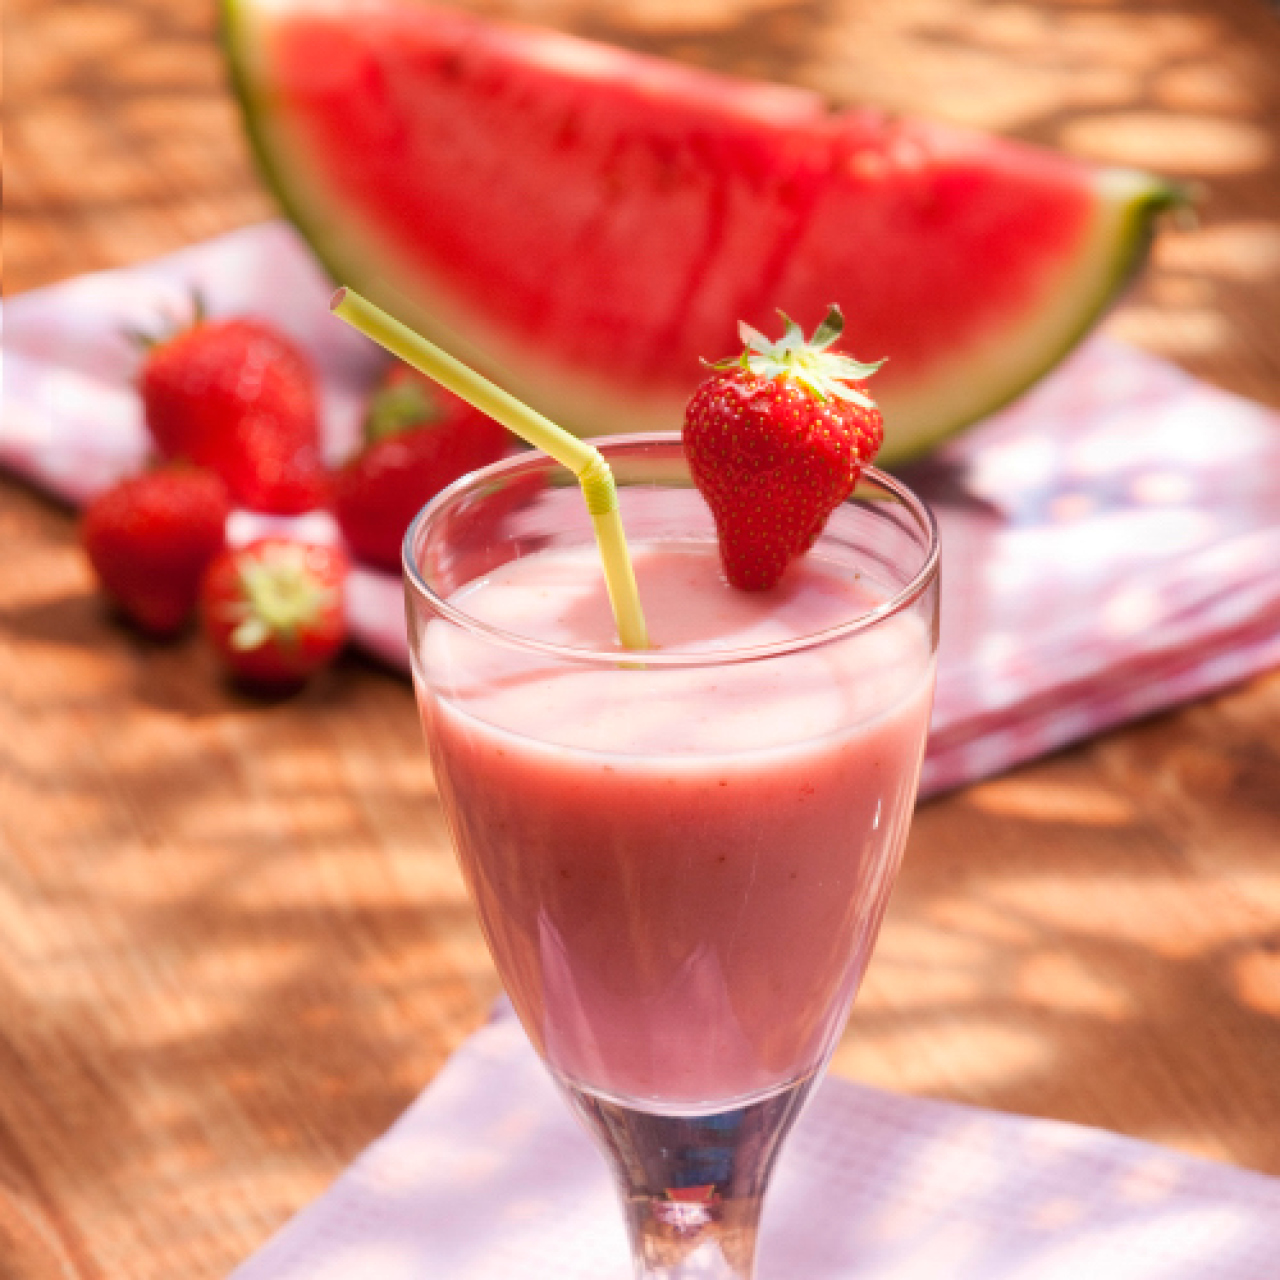 Erdbeer-Melonen-Drink